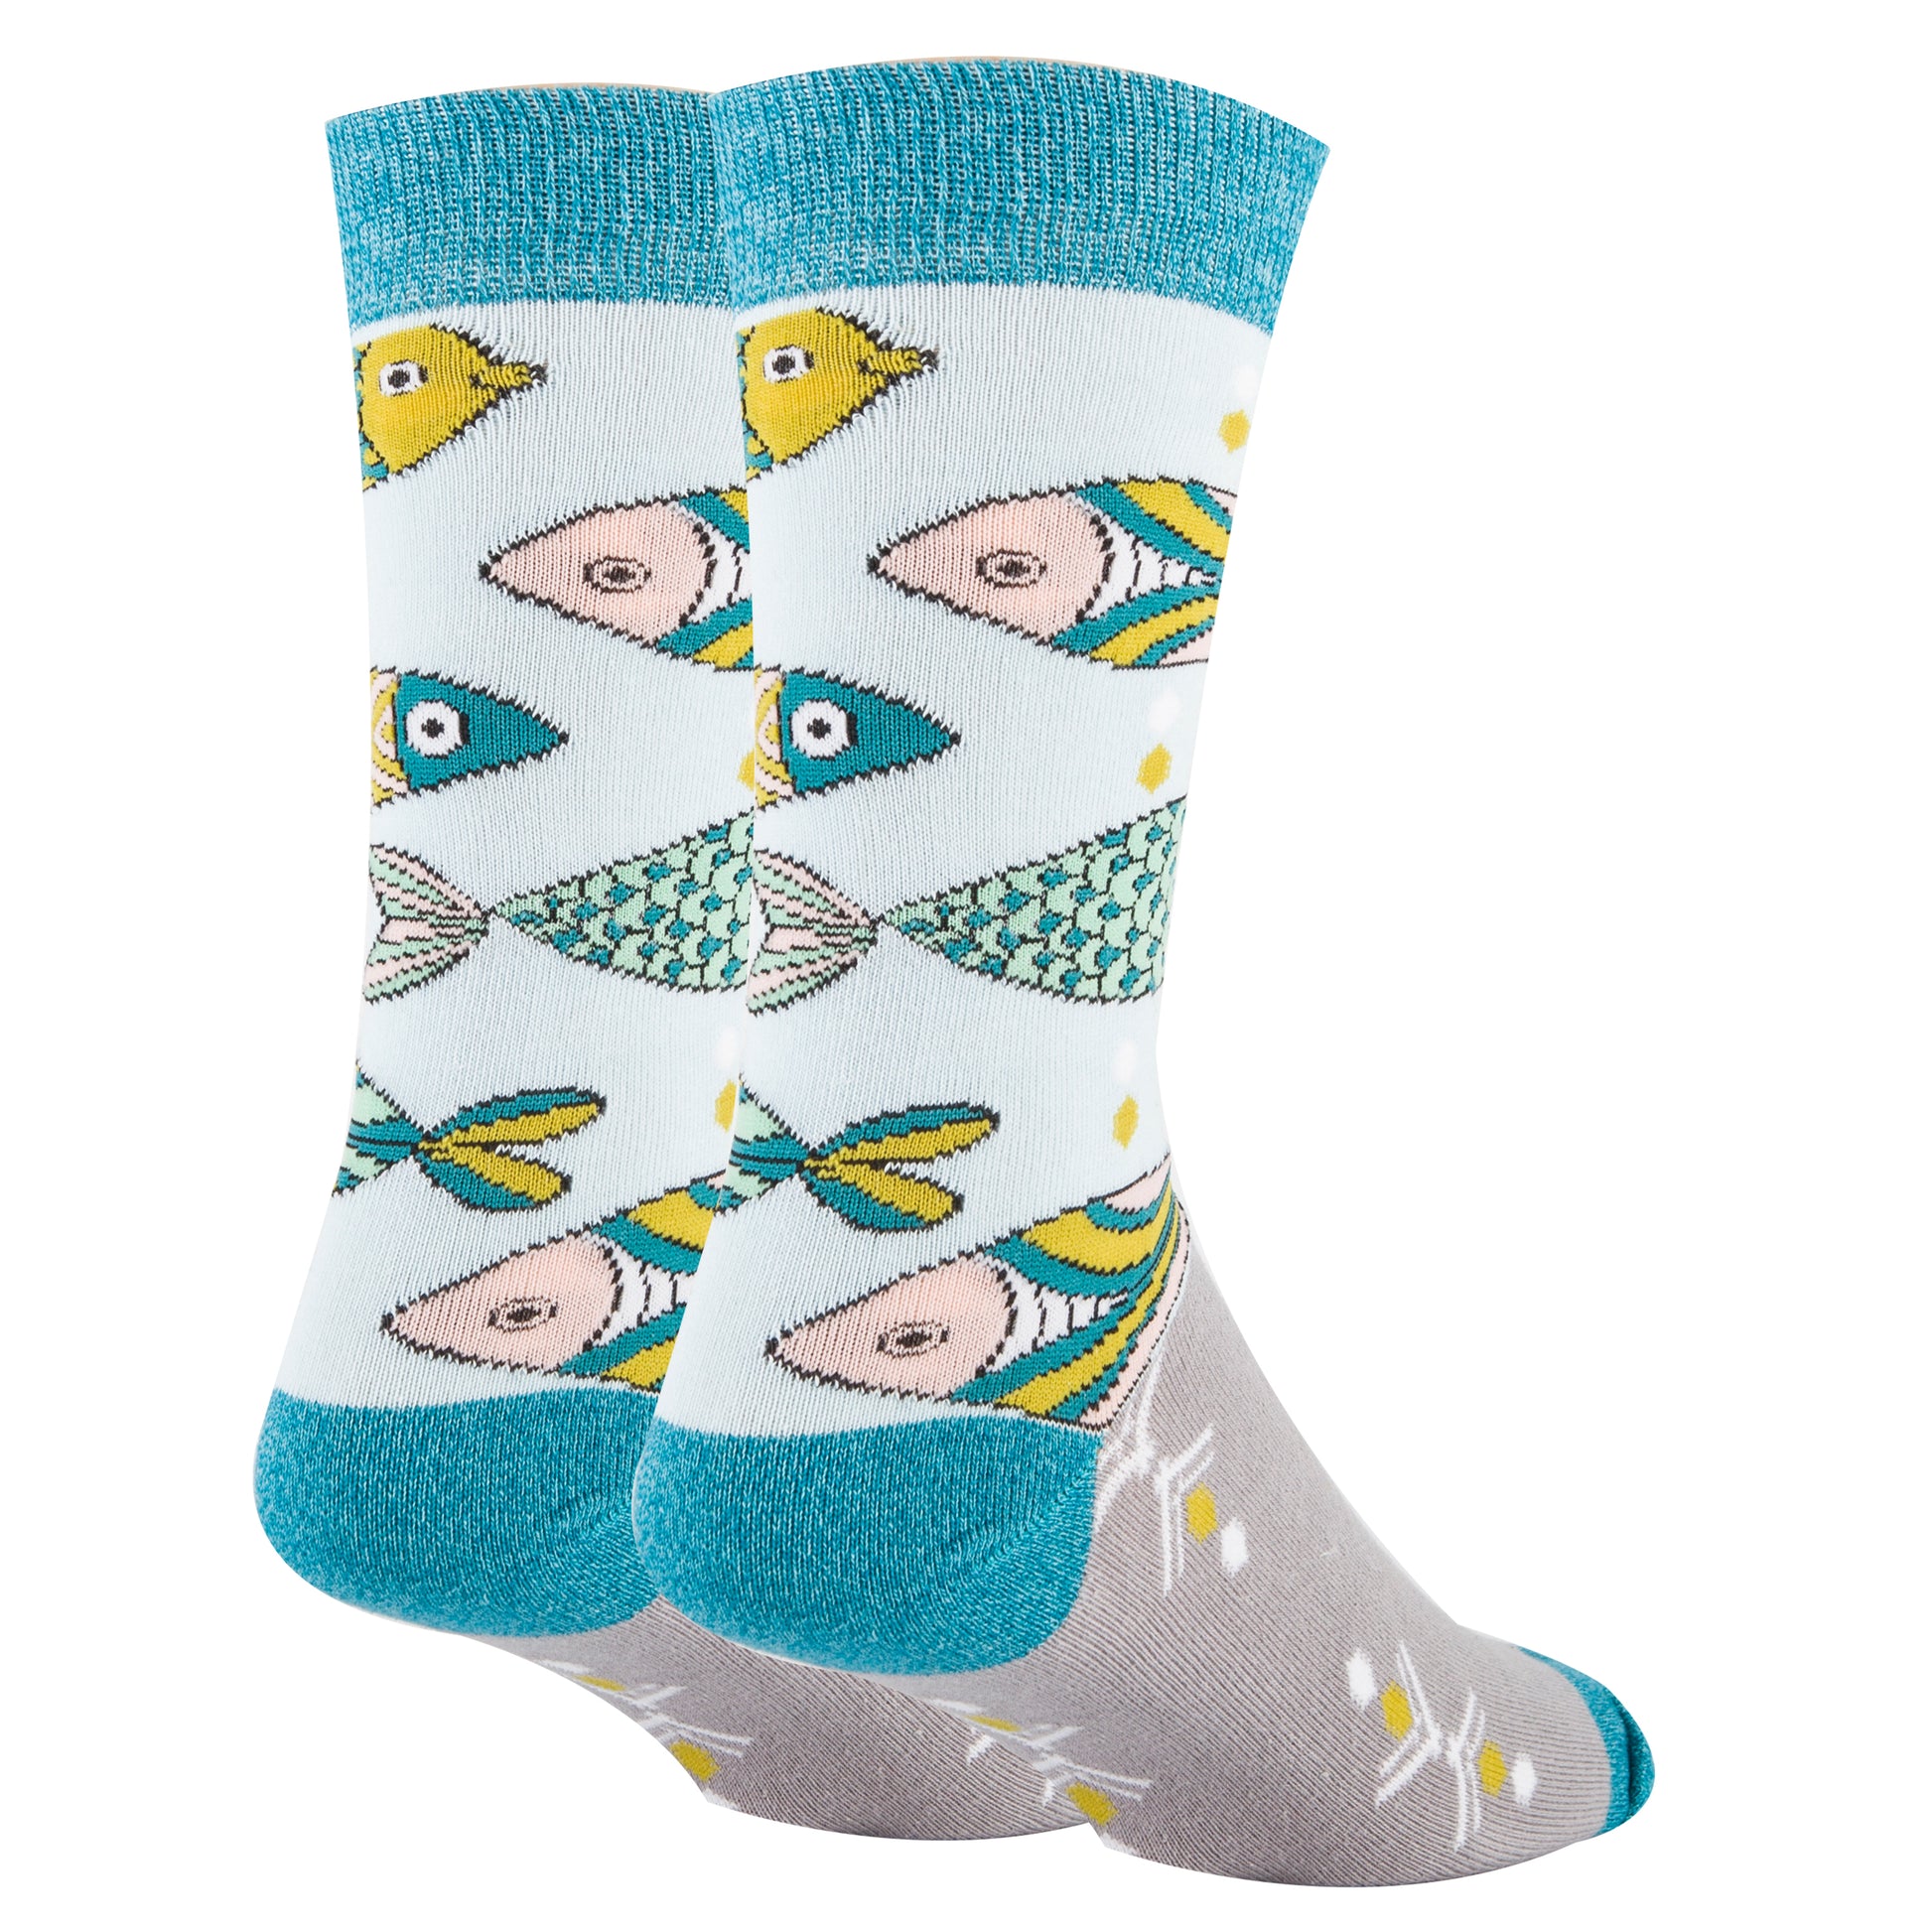 School of Fish - Sock It Up Sock Co